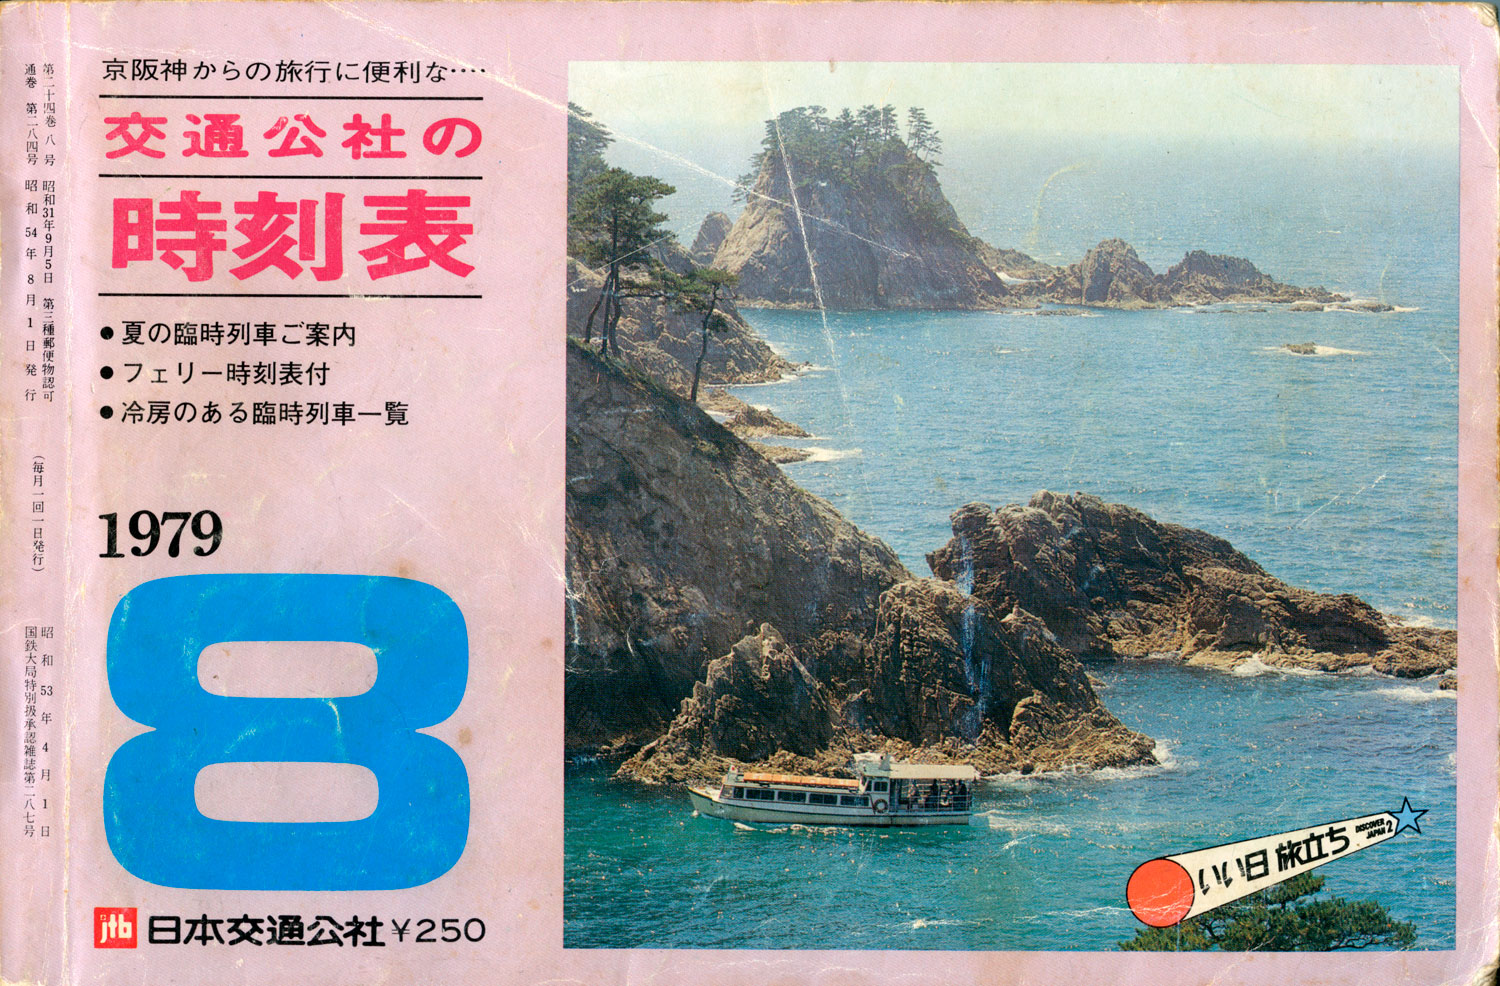 京阪神からの旅行に便利な時刻表1979年8月号表紙